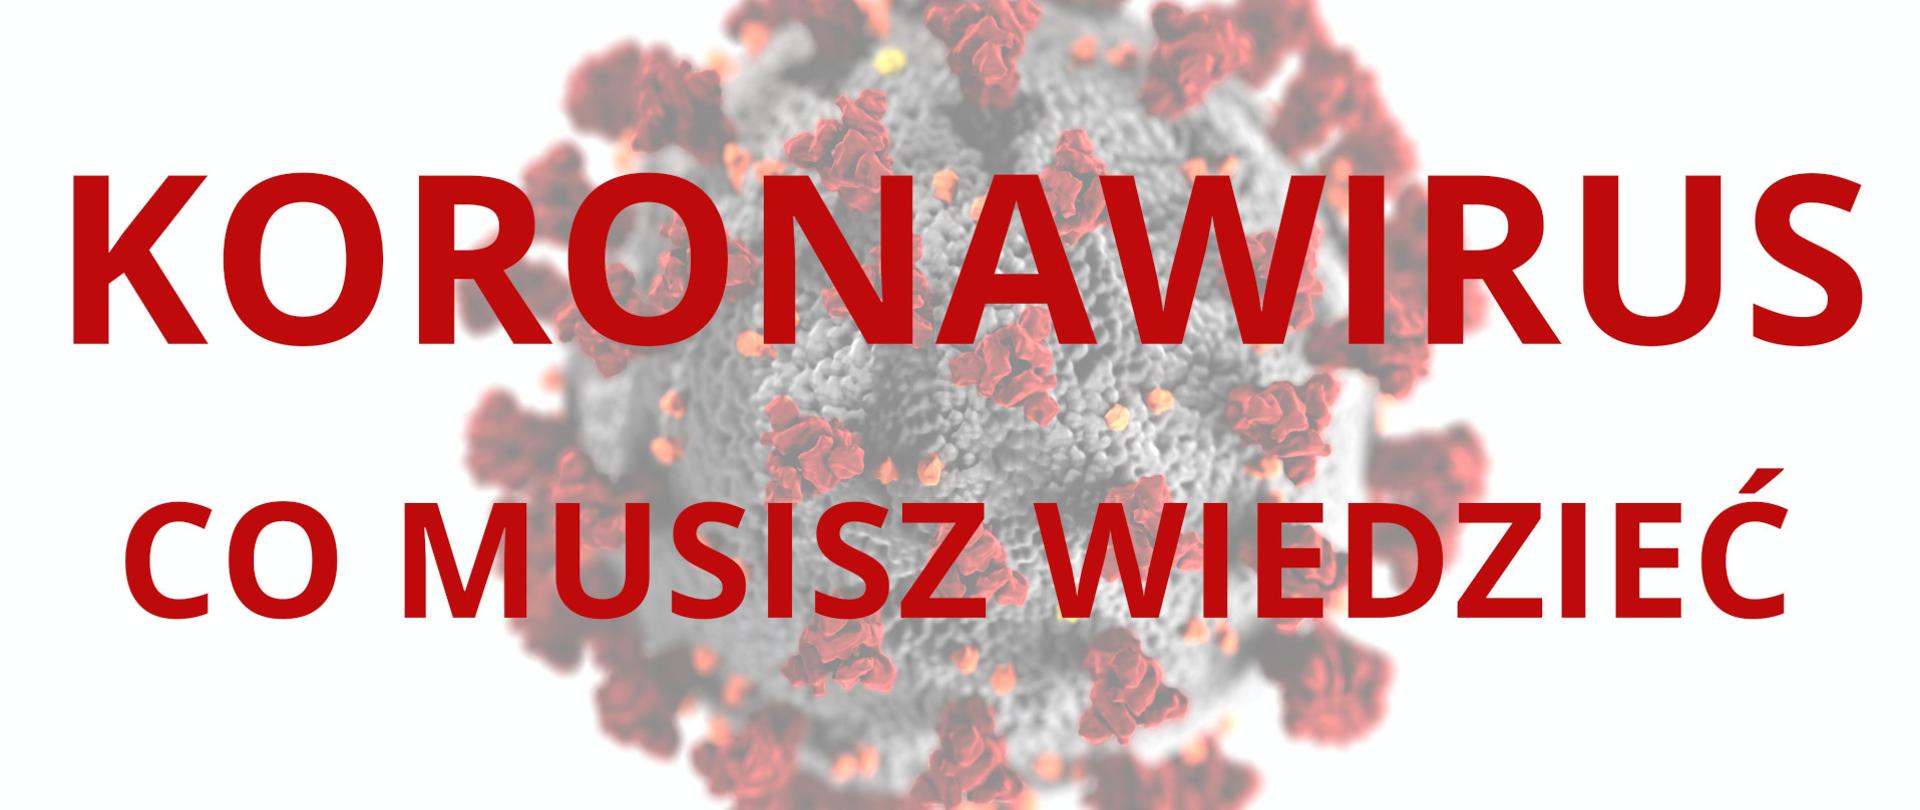 Ilustracja przedstawia duży czerwony napis Koronawirus co musisz wiedzieć. W tle jest zamglone graficzne wyobrażenie wirusa na białym tle.